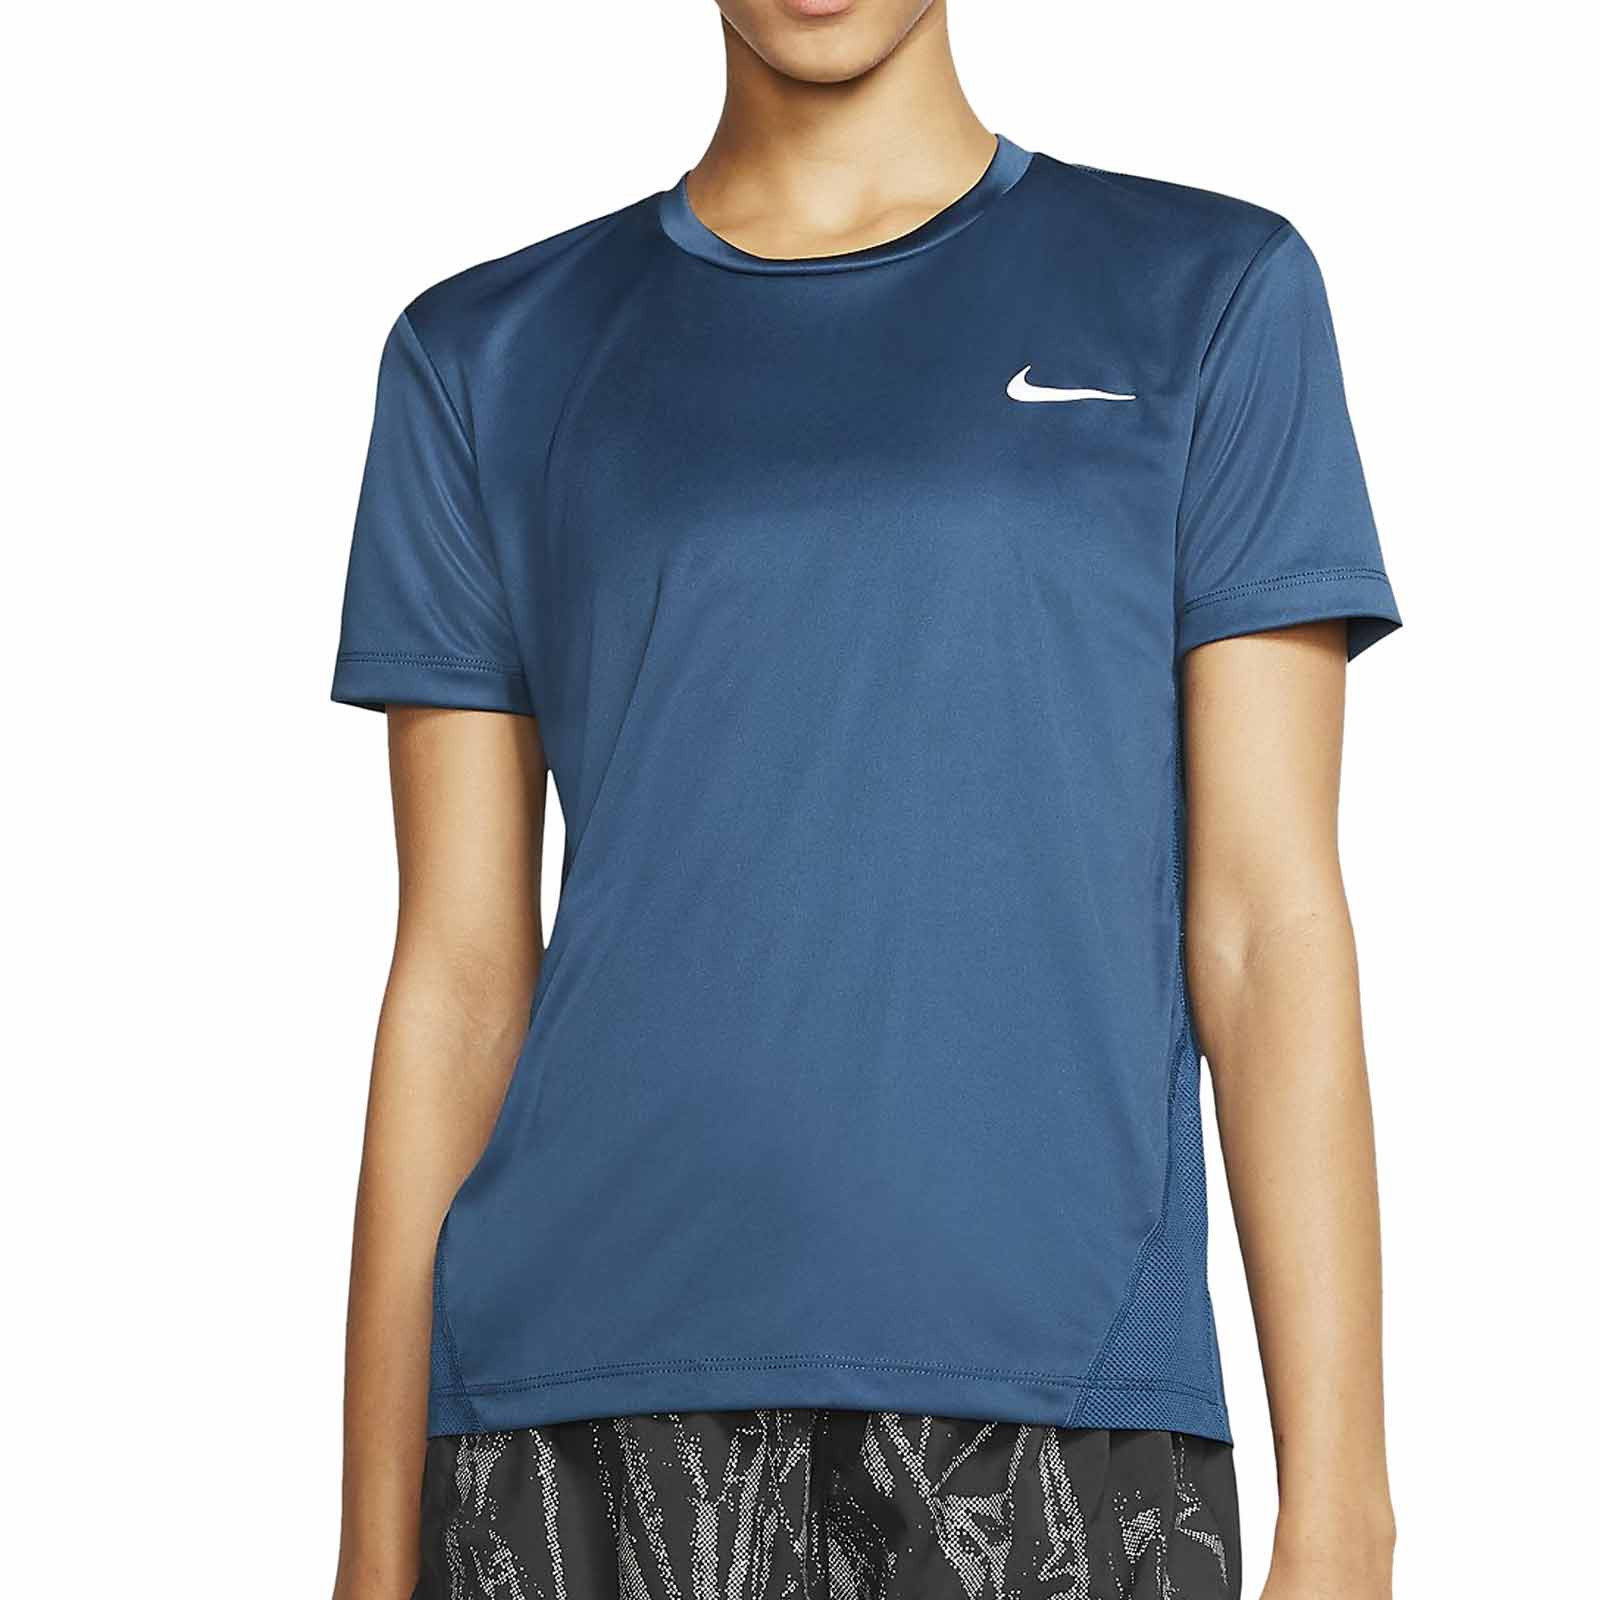 Diacrítico surco reflujo Camiseta mujer Nike Miler azul marino | futbolmania